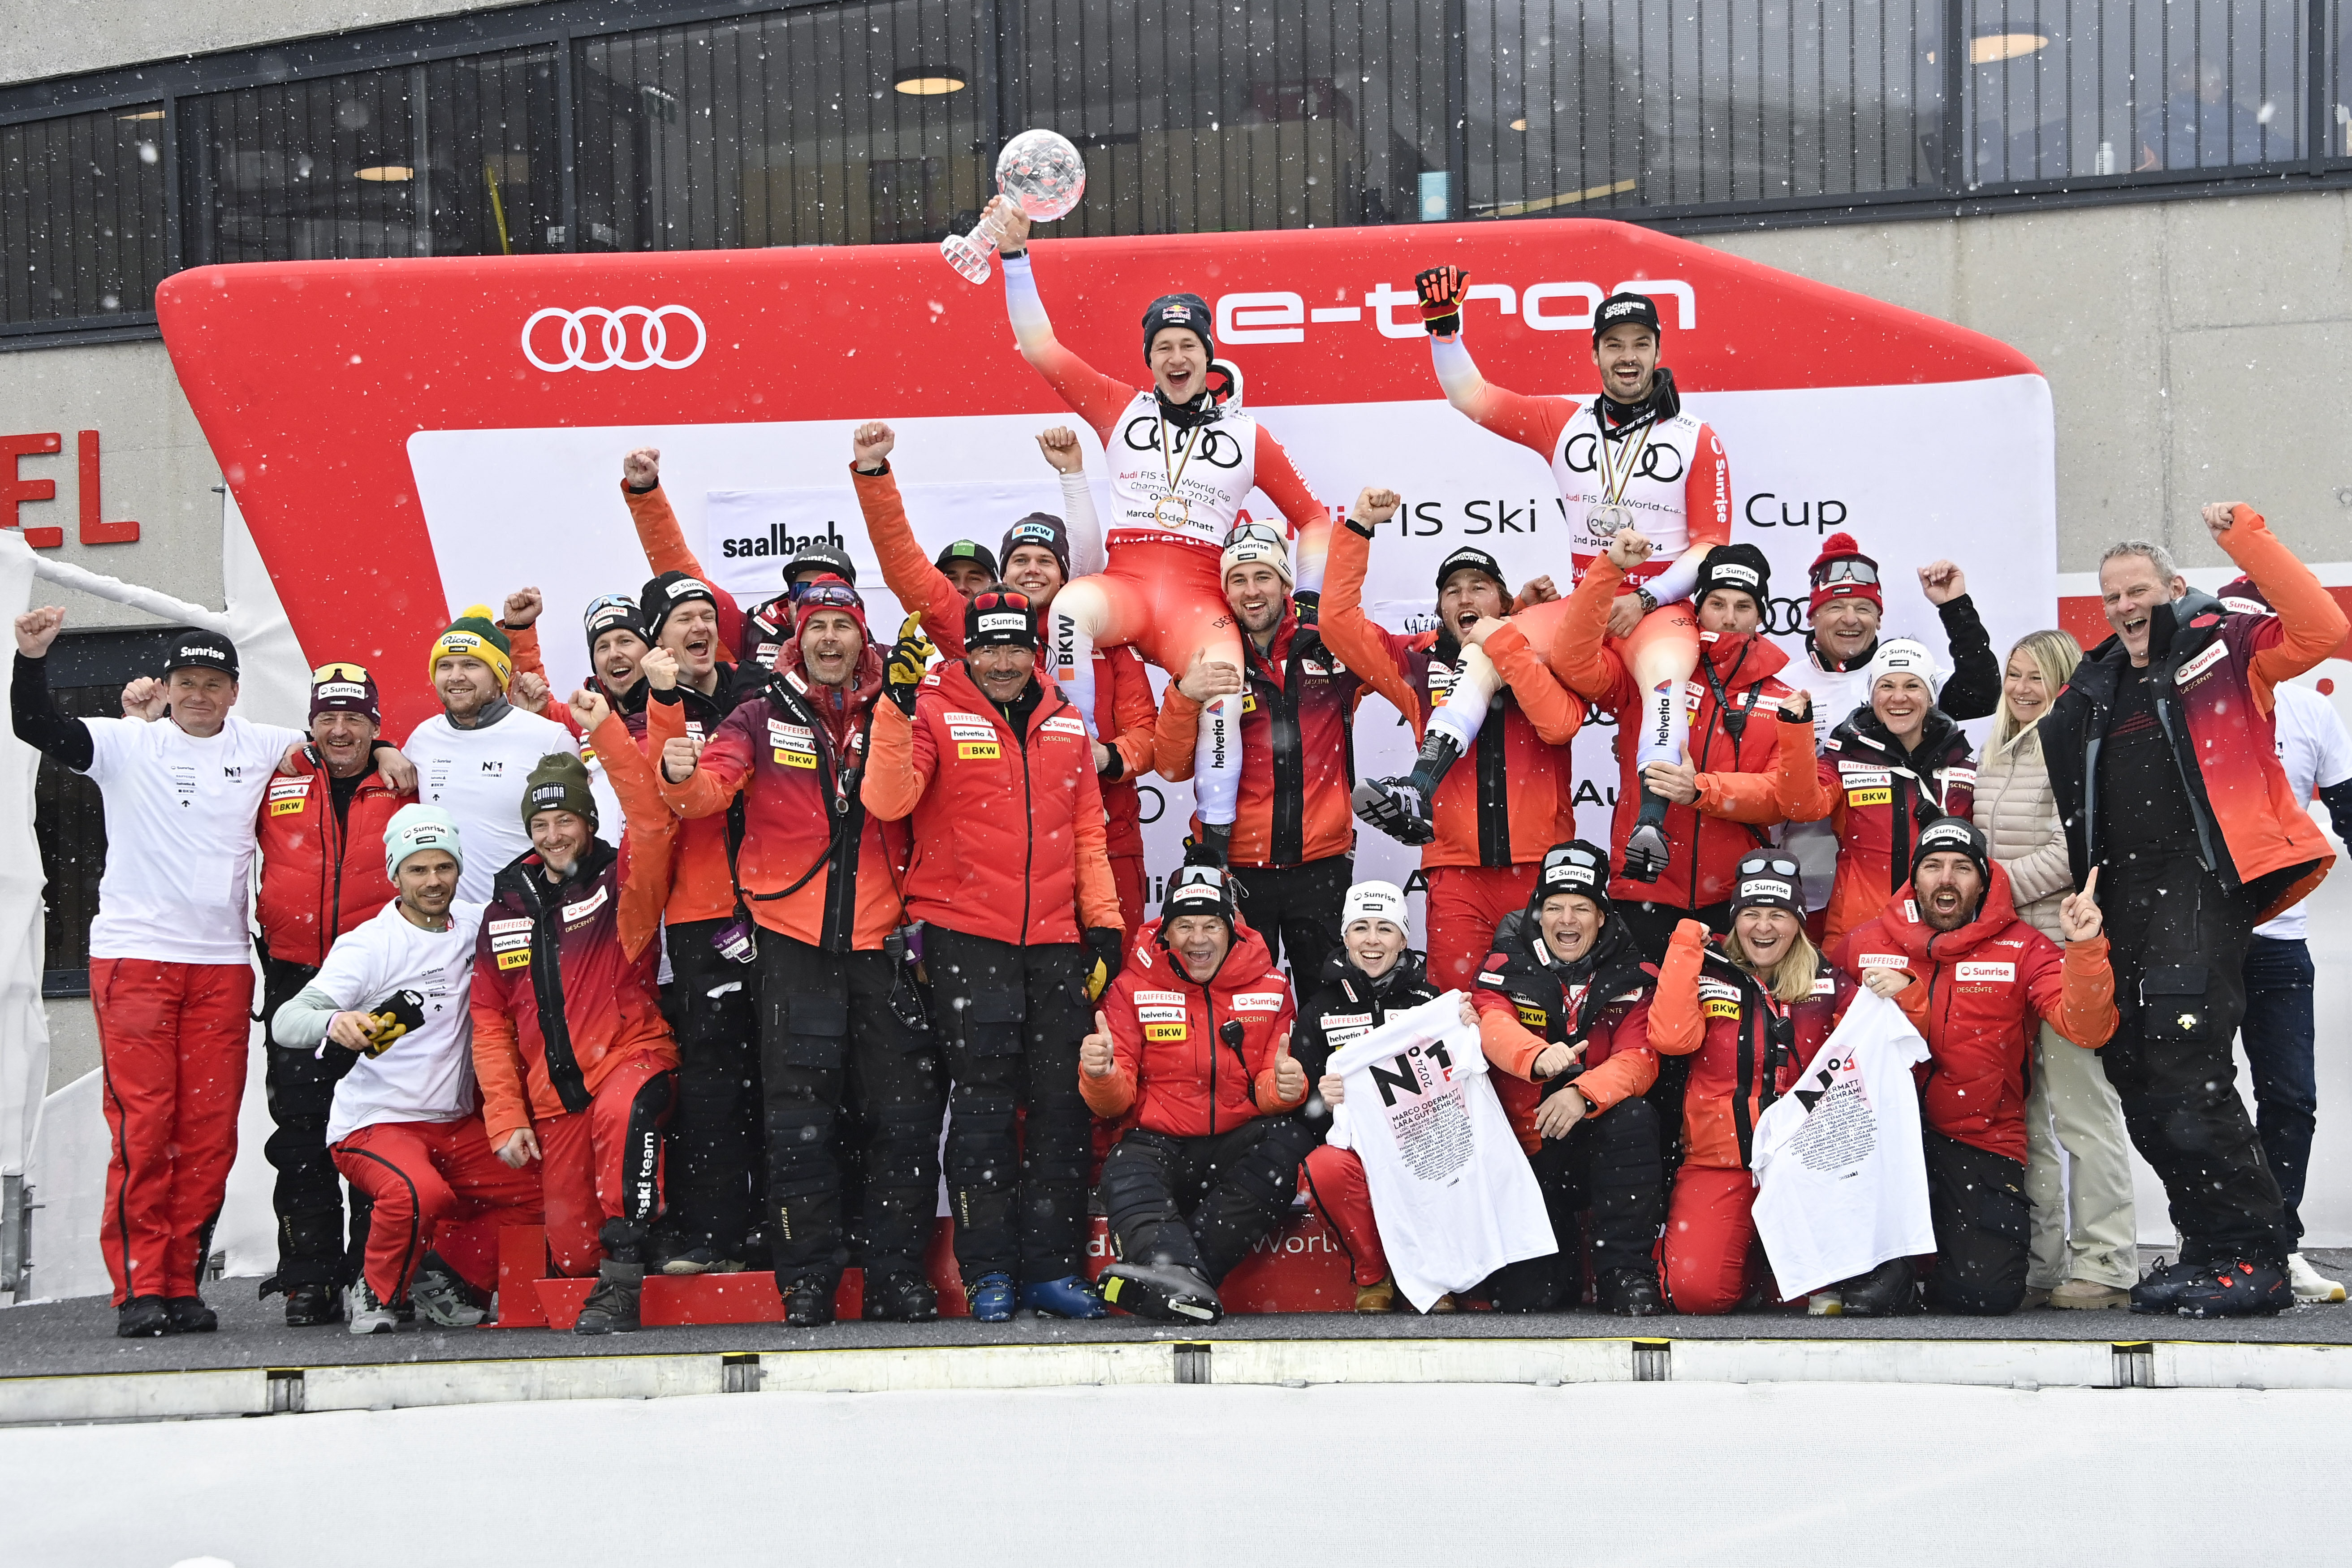 Auswahl der Skiteams rund um die Uhr in der Schweiz, Norwegen und Kroatien mit Personalwechseln